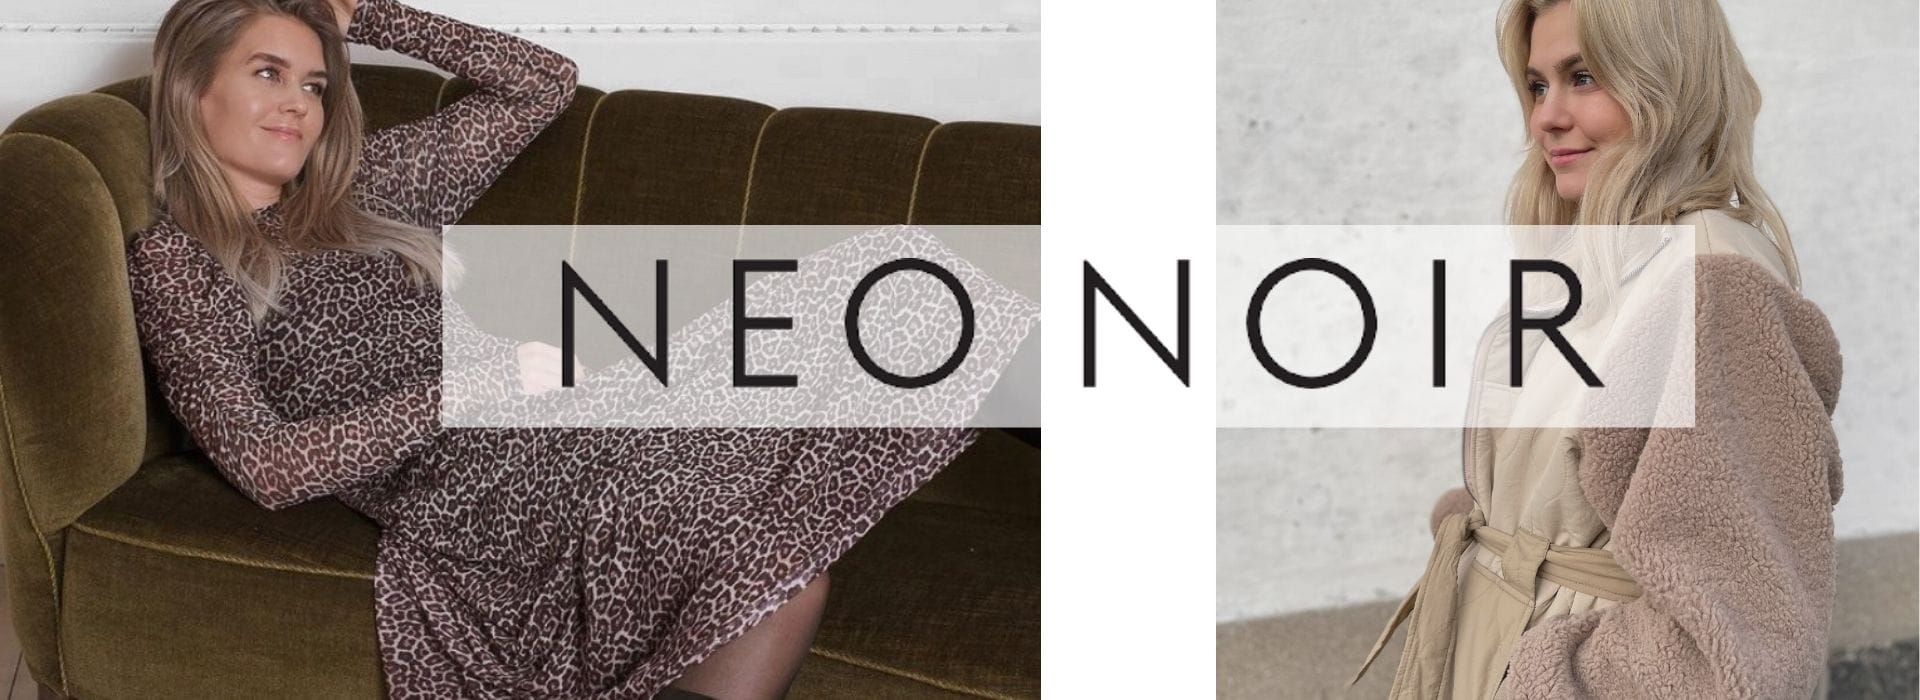 يقطع انخفاض قفل neo noir kimono leo tilbud solarireland2020.com